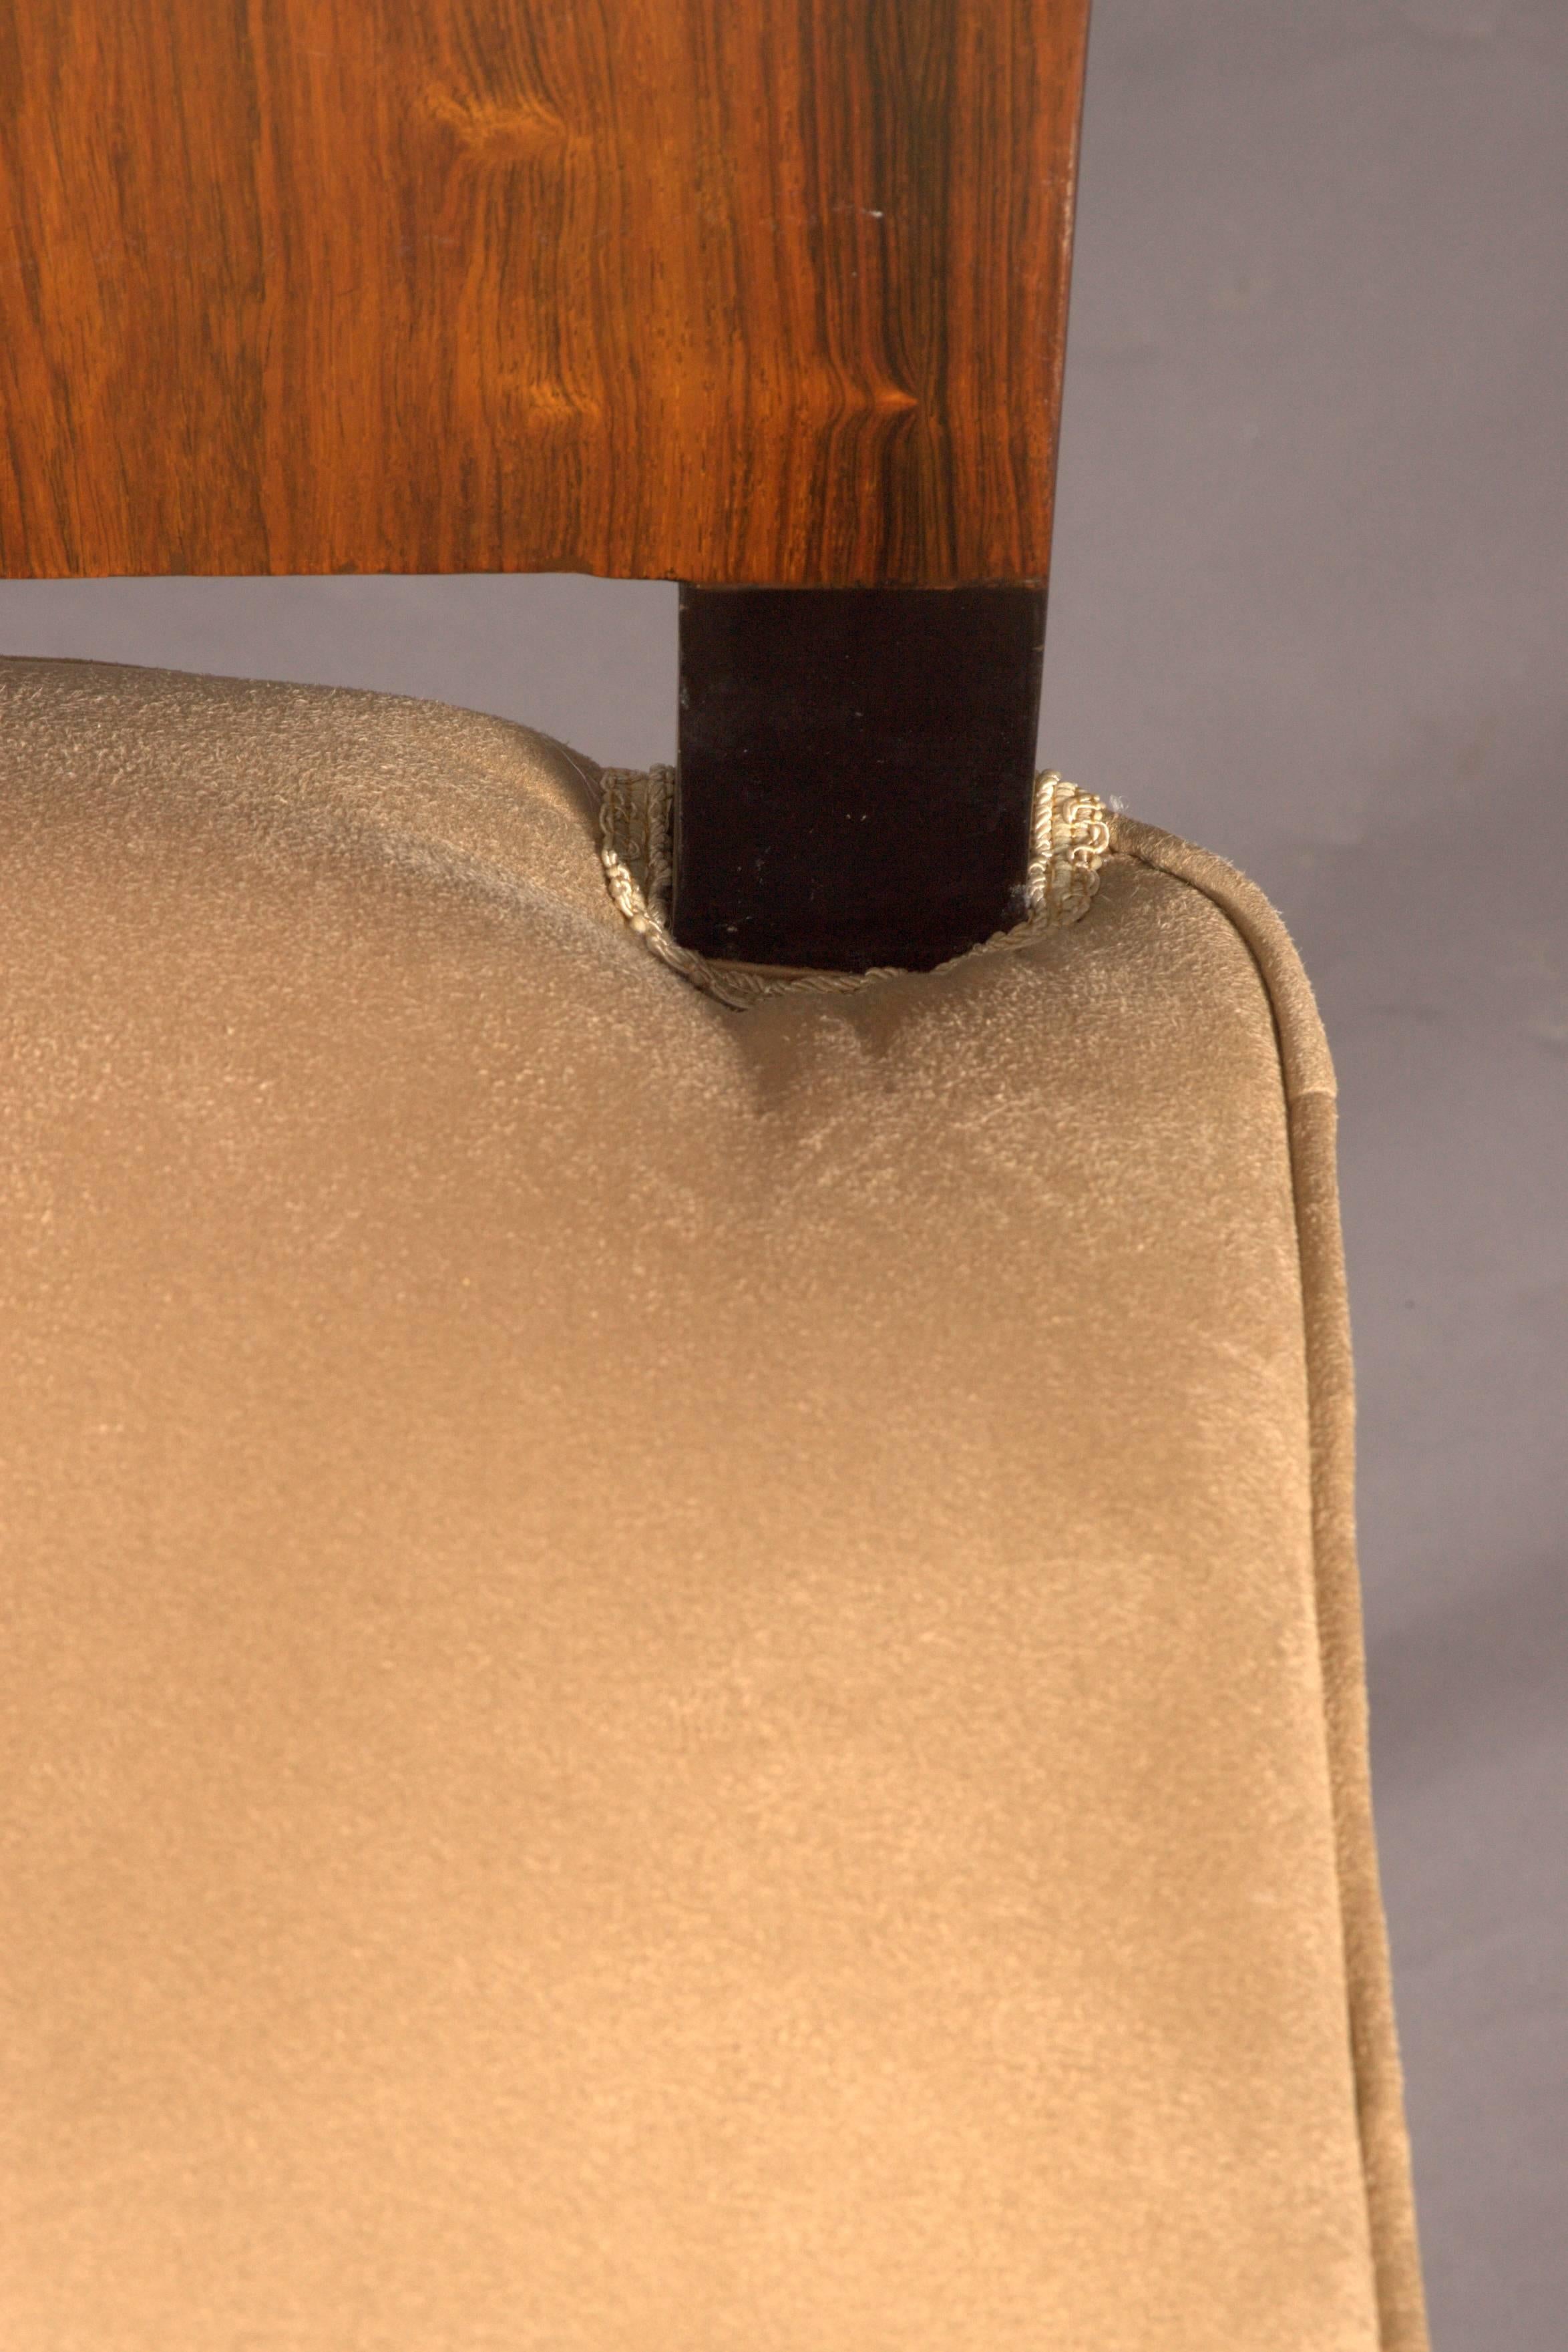 Elegant Chair in Art Deco Style, Rosewood Veneer 1